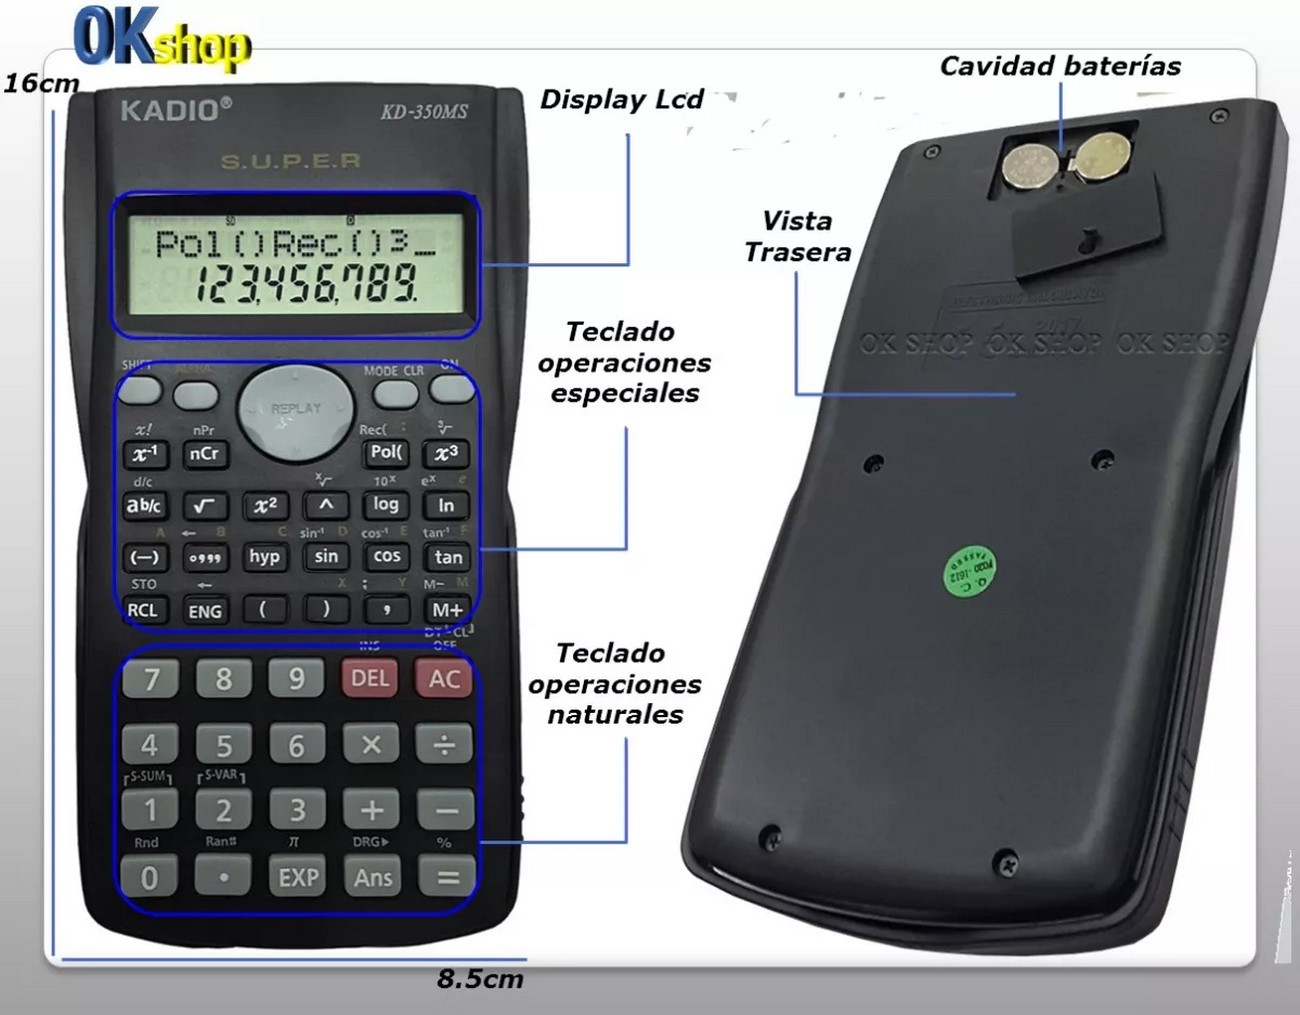 Calculadora Cientifica Completa Kadio + Baterias Kd350ms